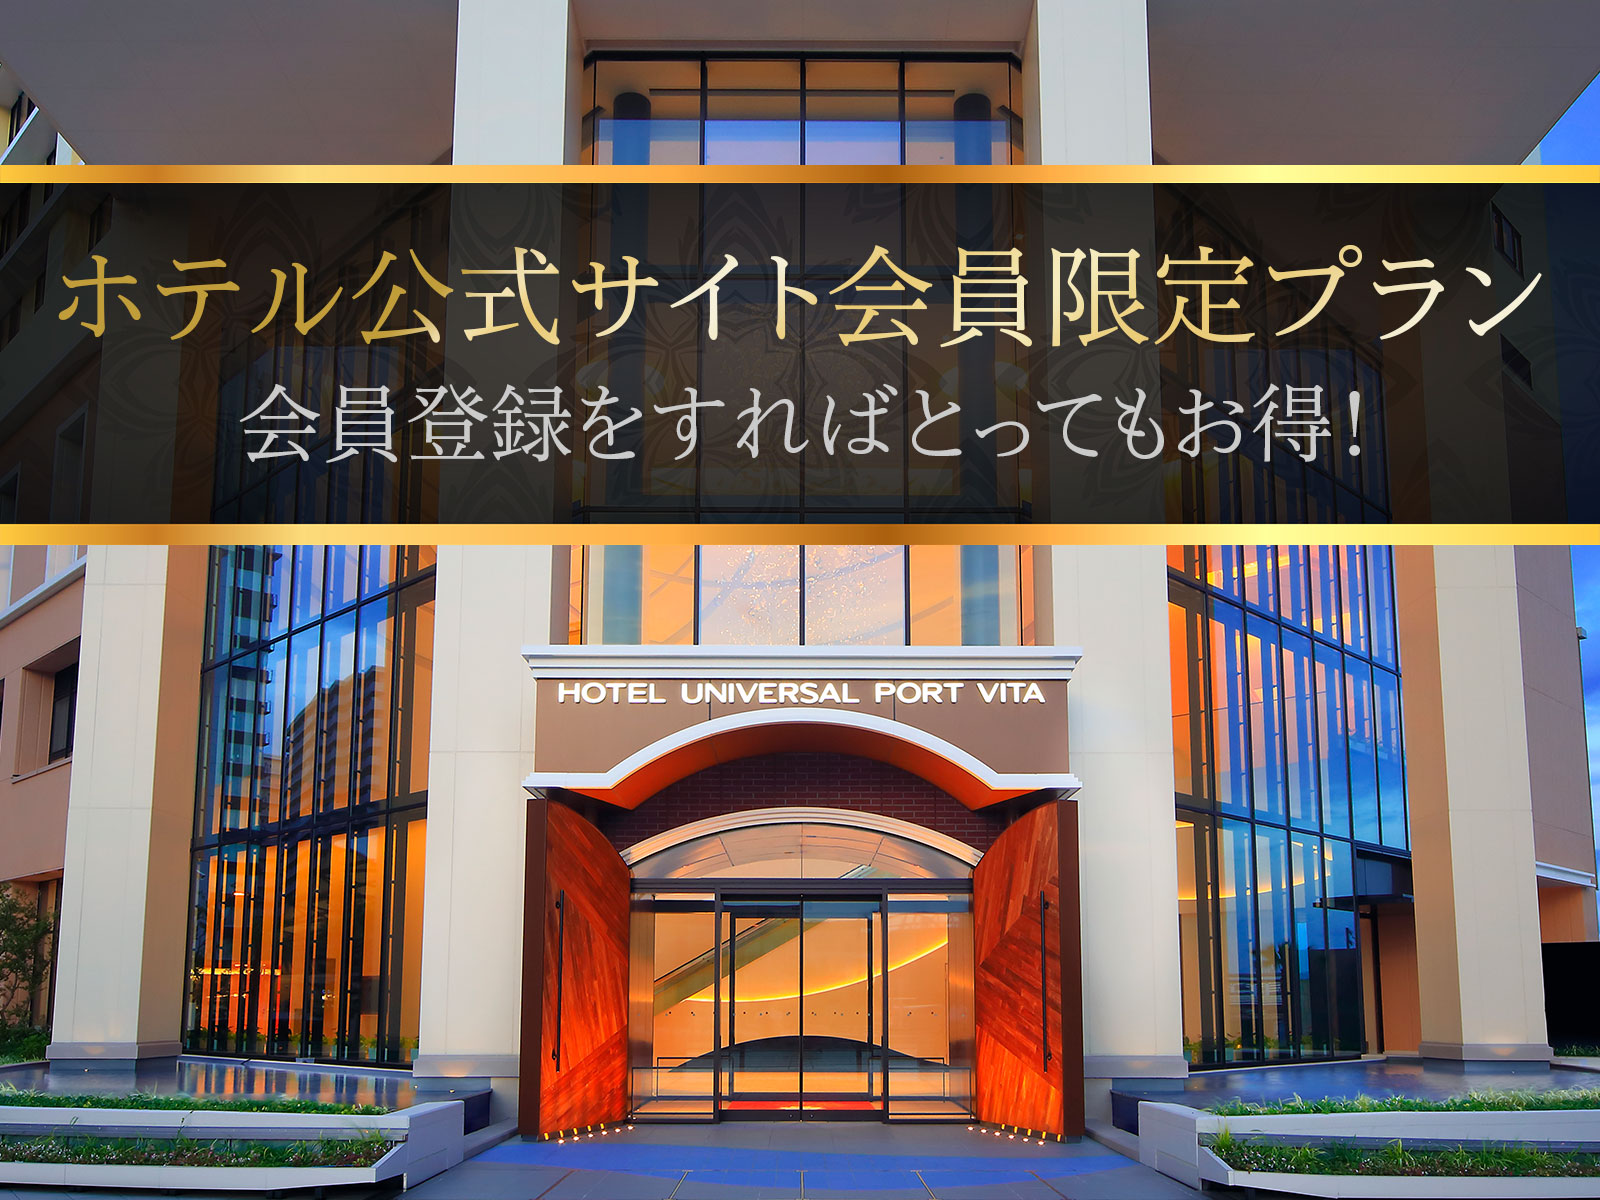 宿泊プラン 公式 ホテル ユニバーサル ポート ヴィータ ユニバーサル スタジオ ジャパン オフィシャルホテル